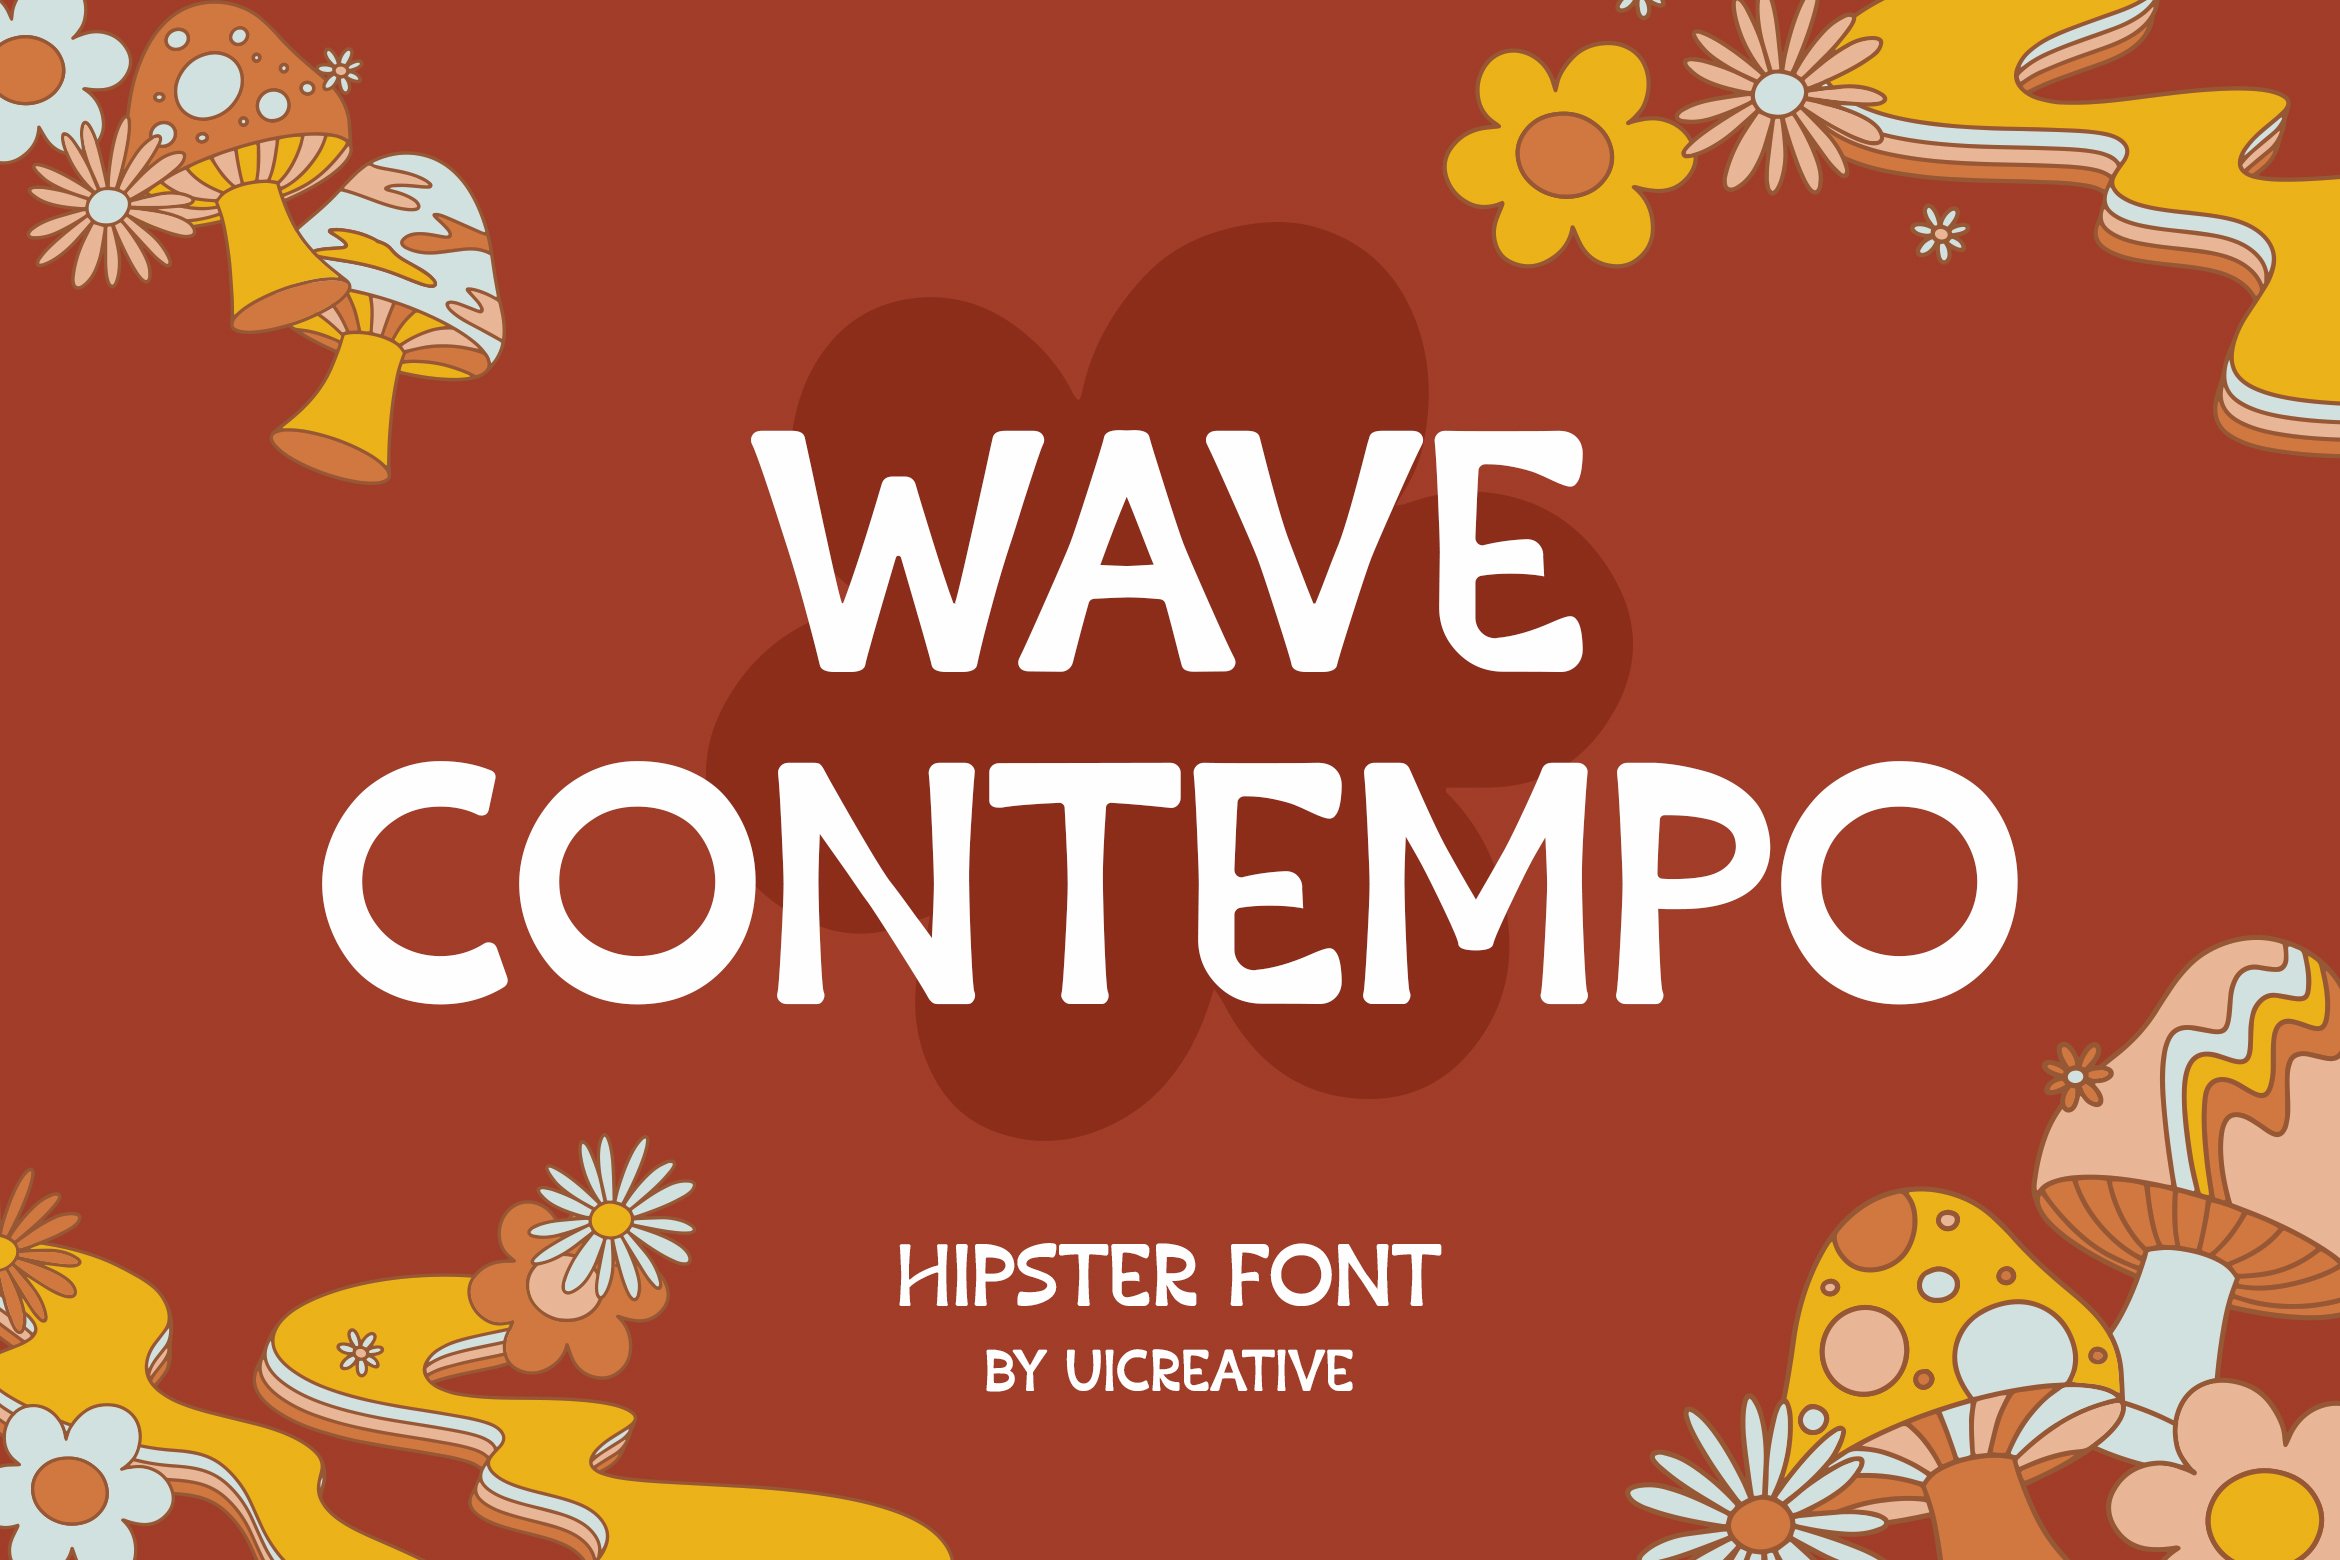 Wave Contempo Sans Serif Font cover image.